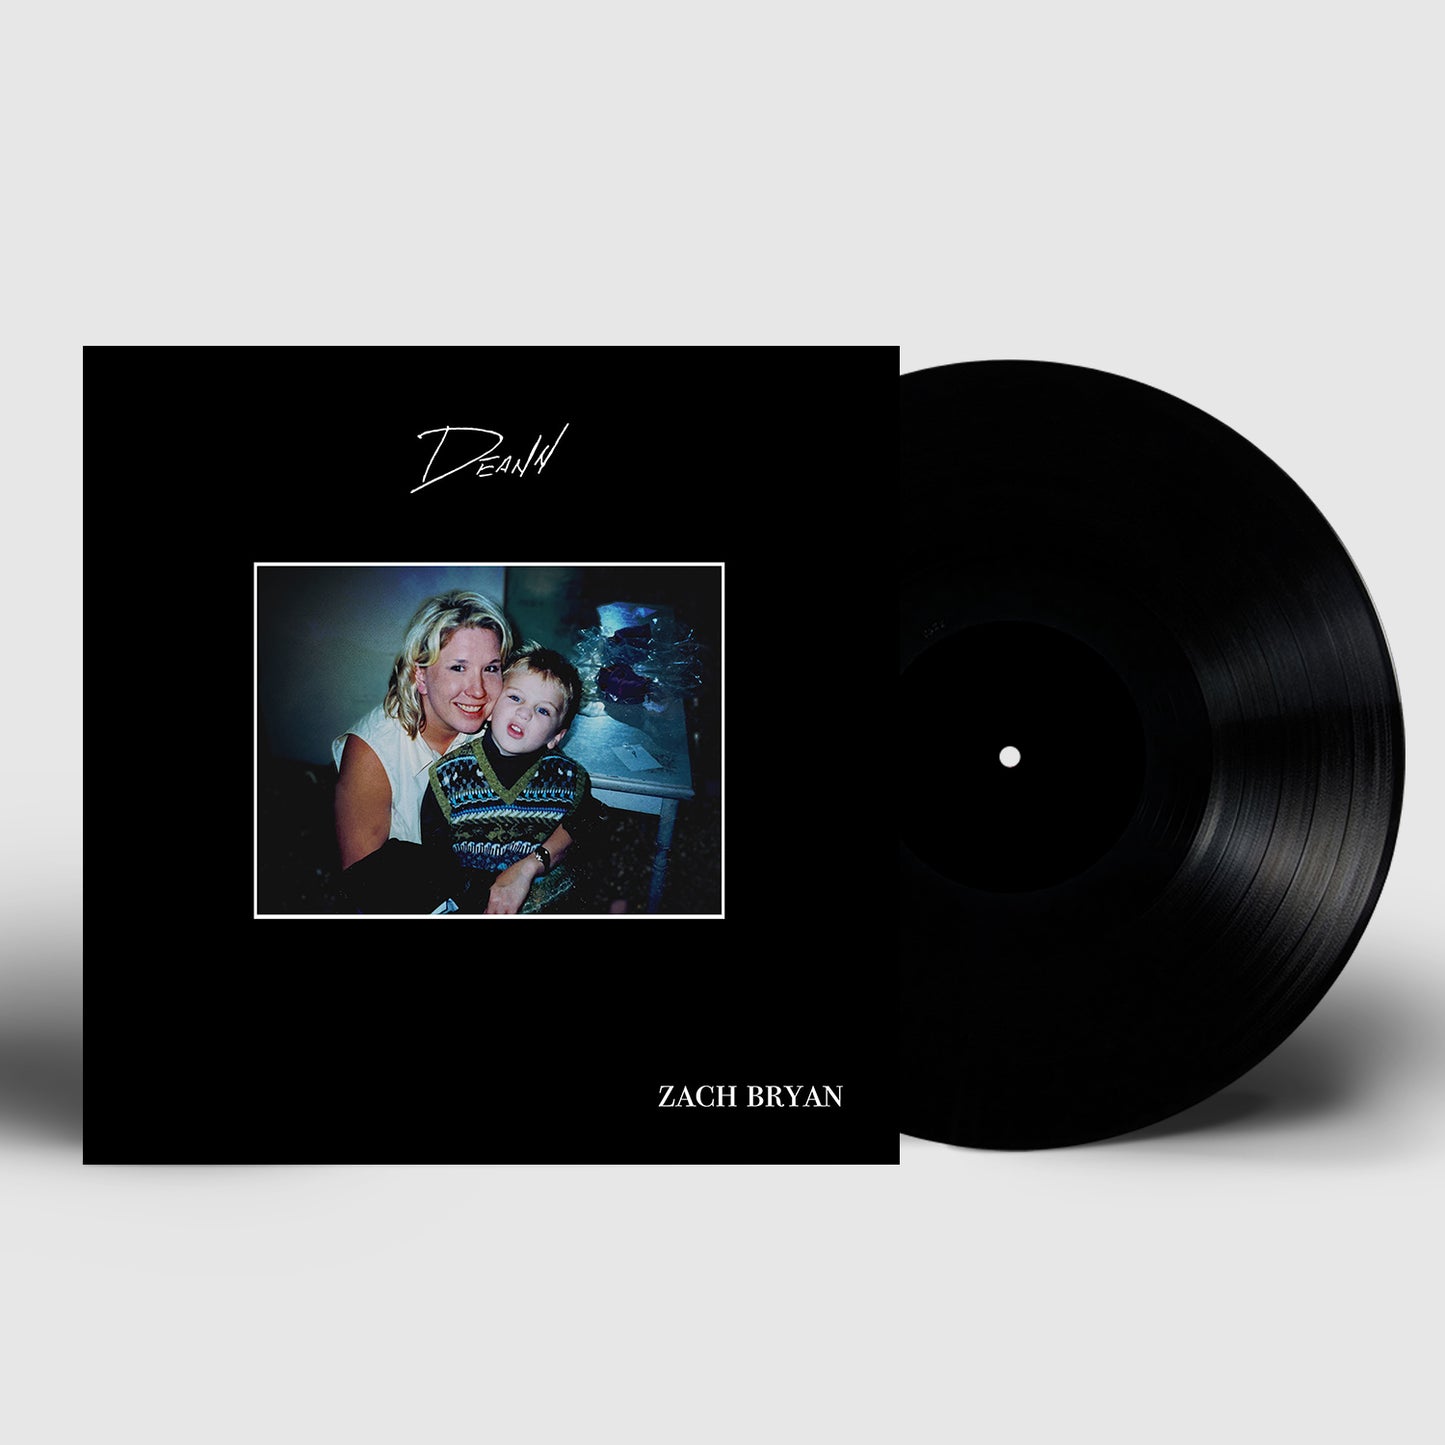 DeAnn Vinyl LP Record | Official Zach Bryan Store